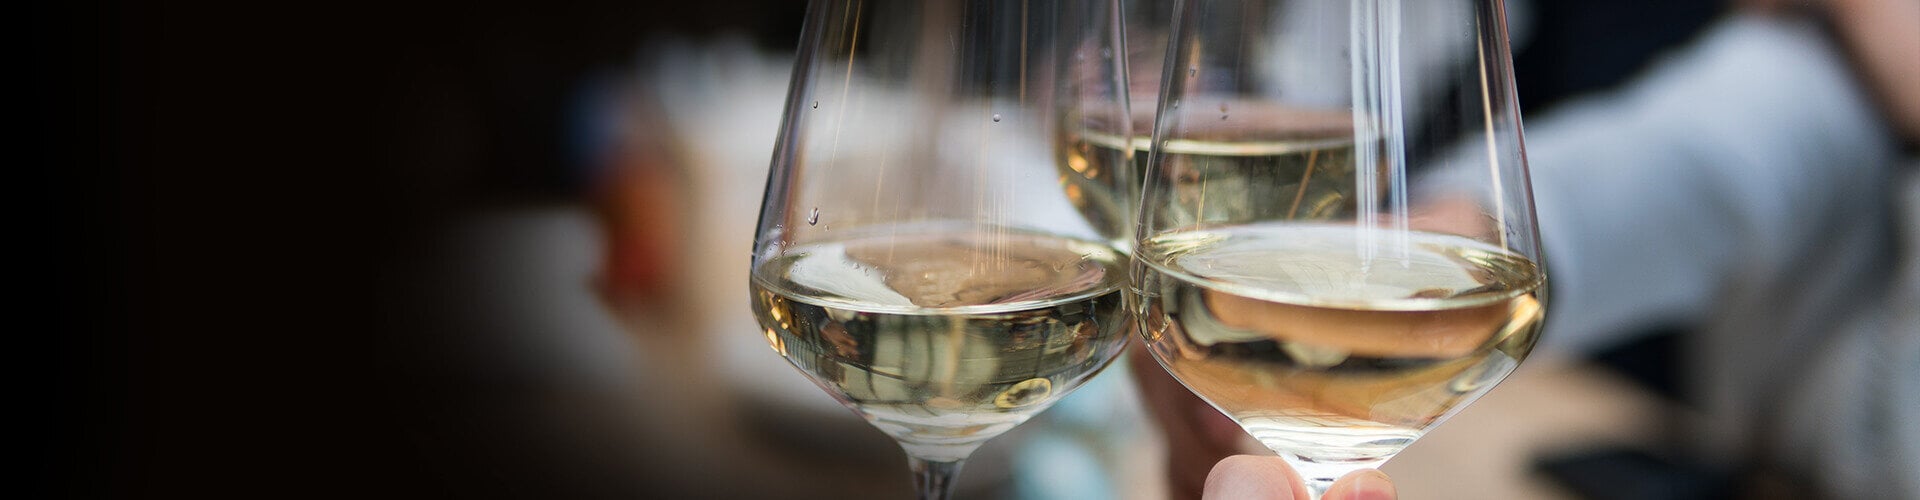 Taste the best white wines of Piedmont